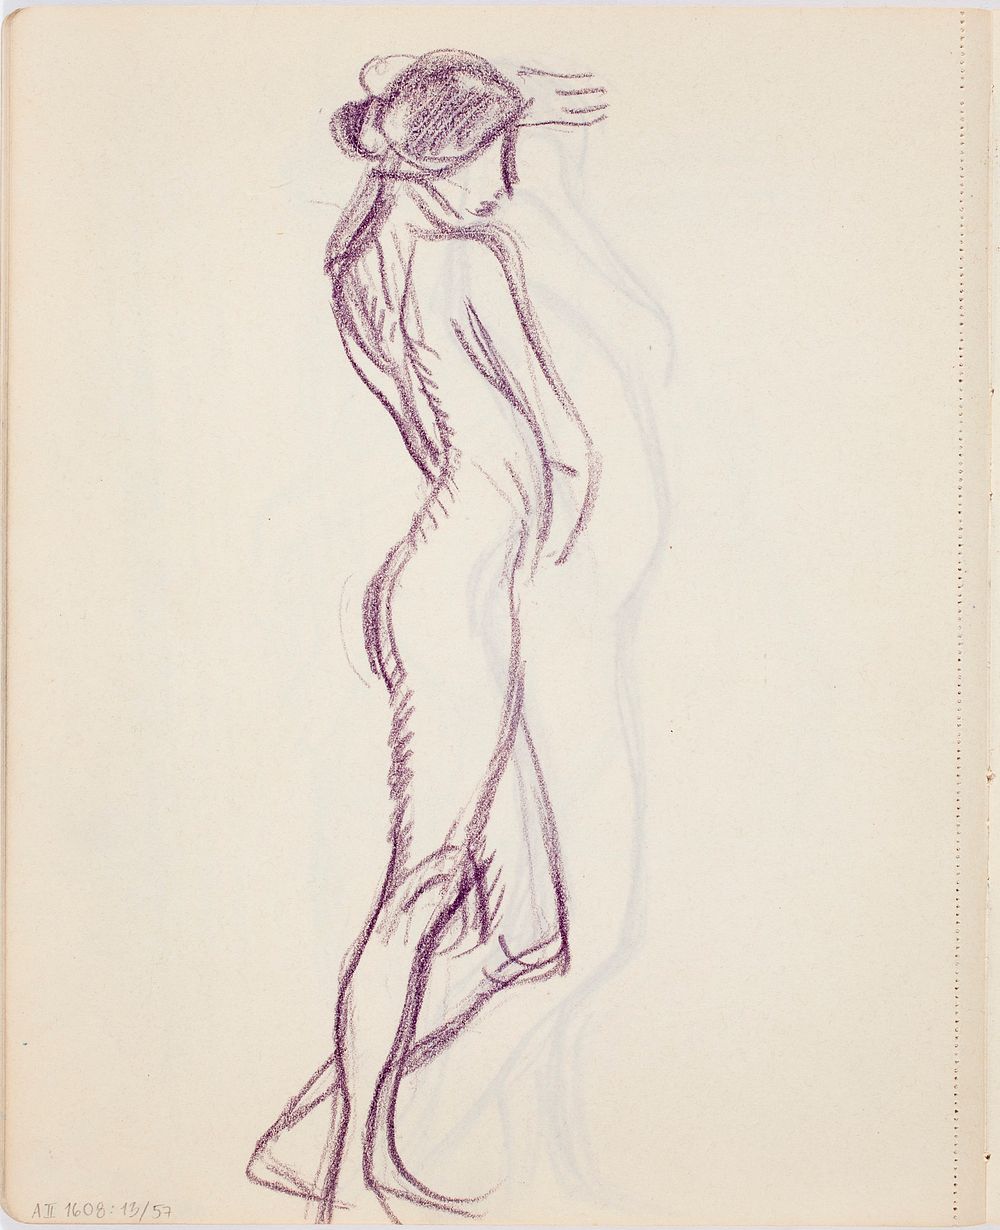 Seisova alaston nuori nainen sivusta, luonnos, 1912part of a sketchbook by Magnus Enckell